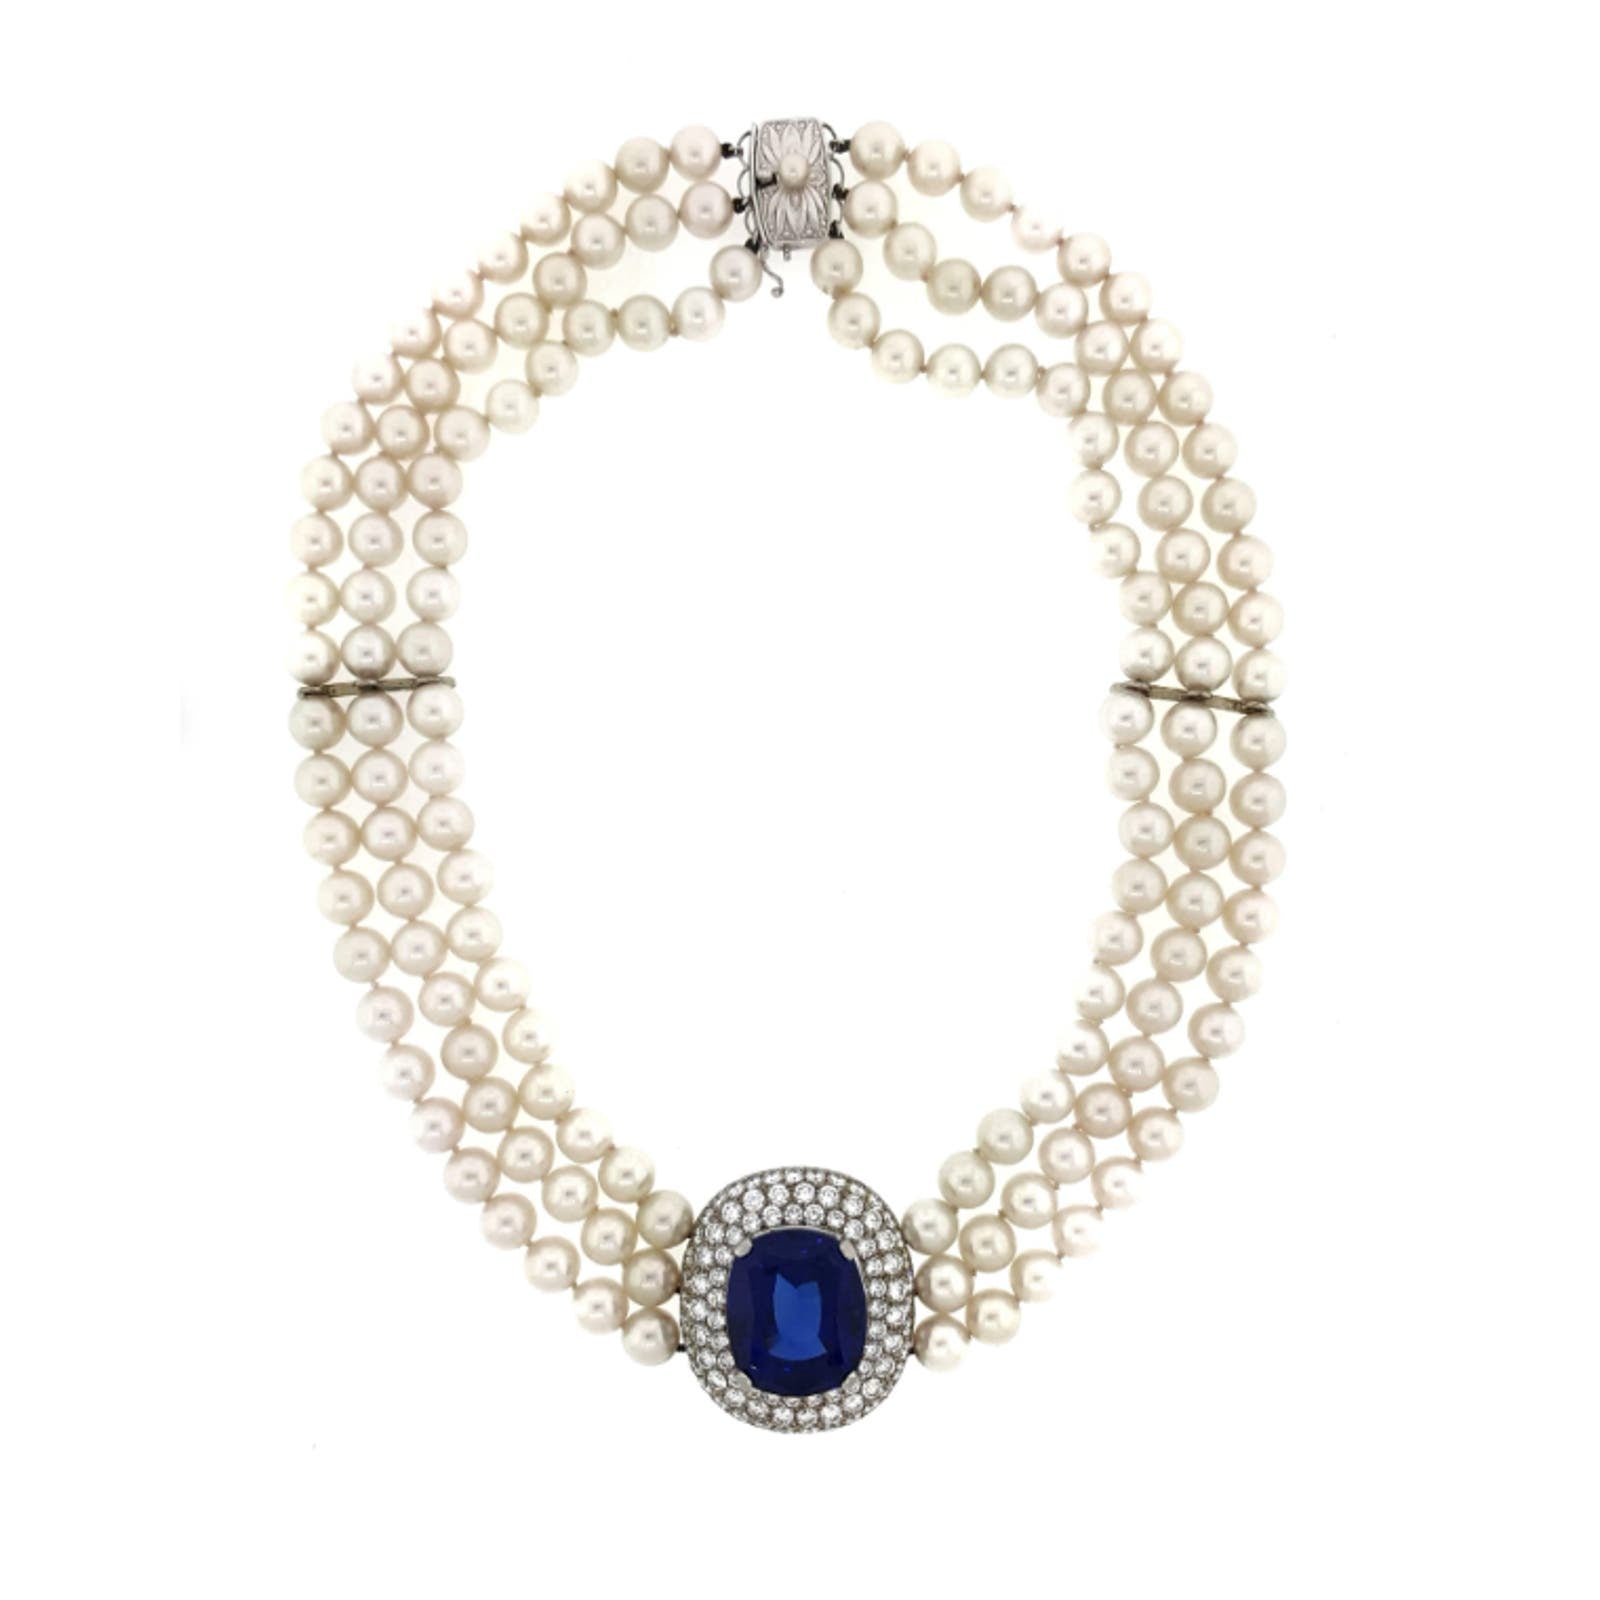 Mikimoto Tanzanite, Diamond & Pearl Choker Necklace in 18k White Gold - HM1875SE